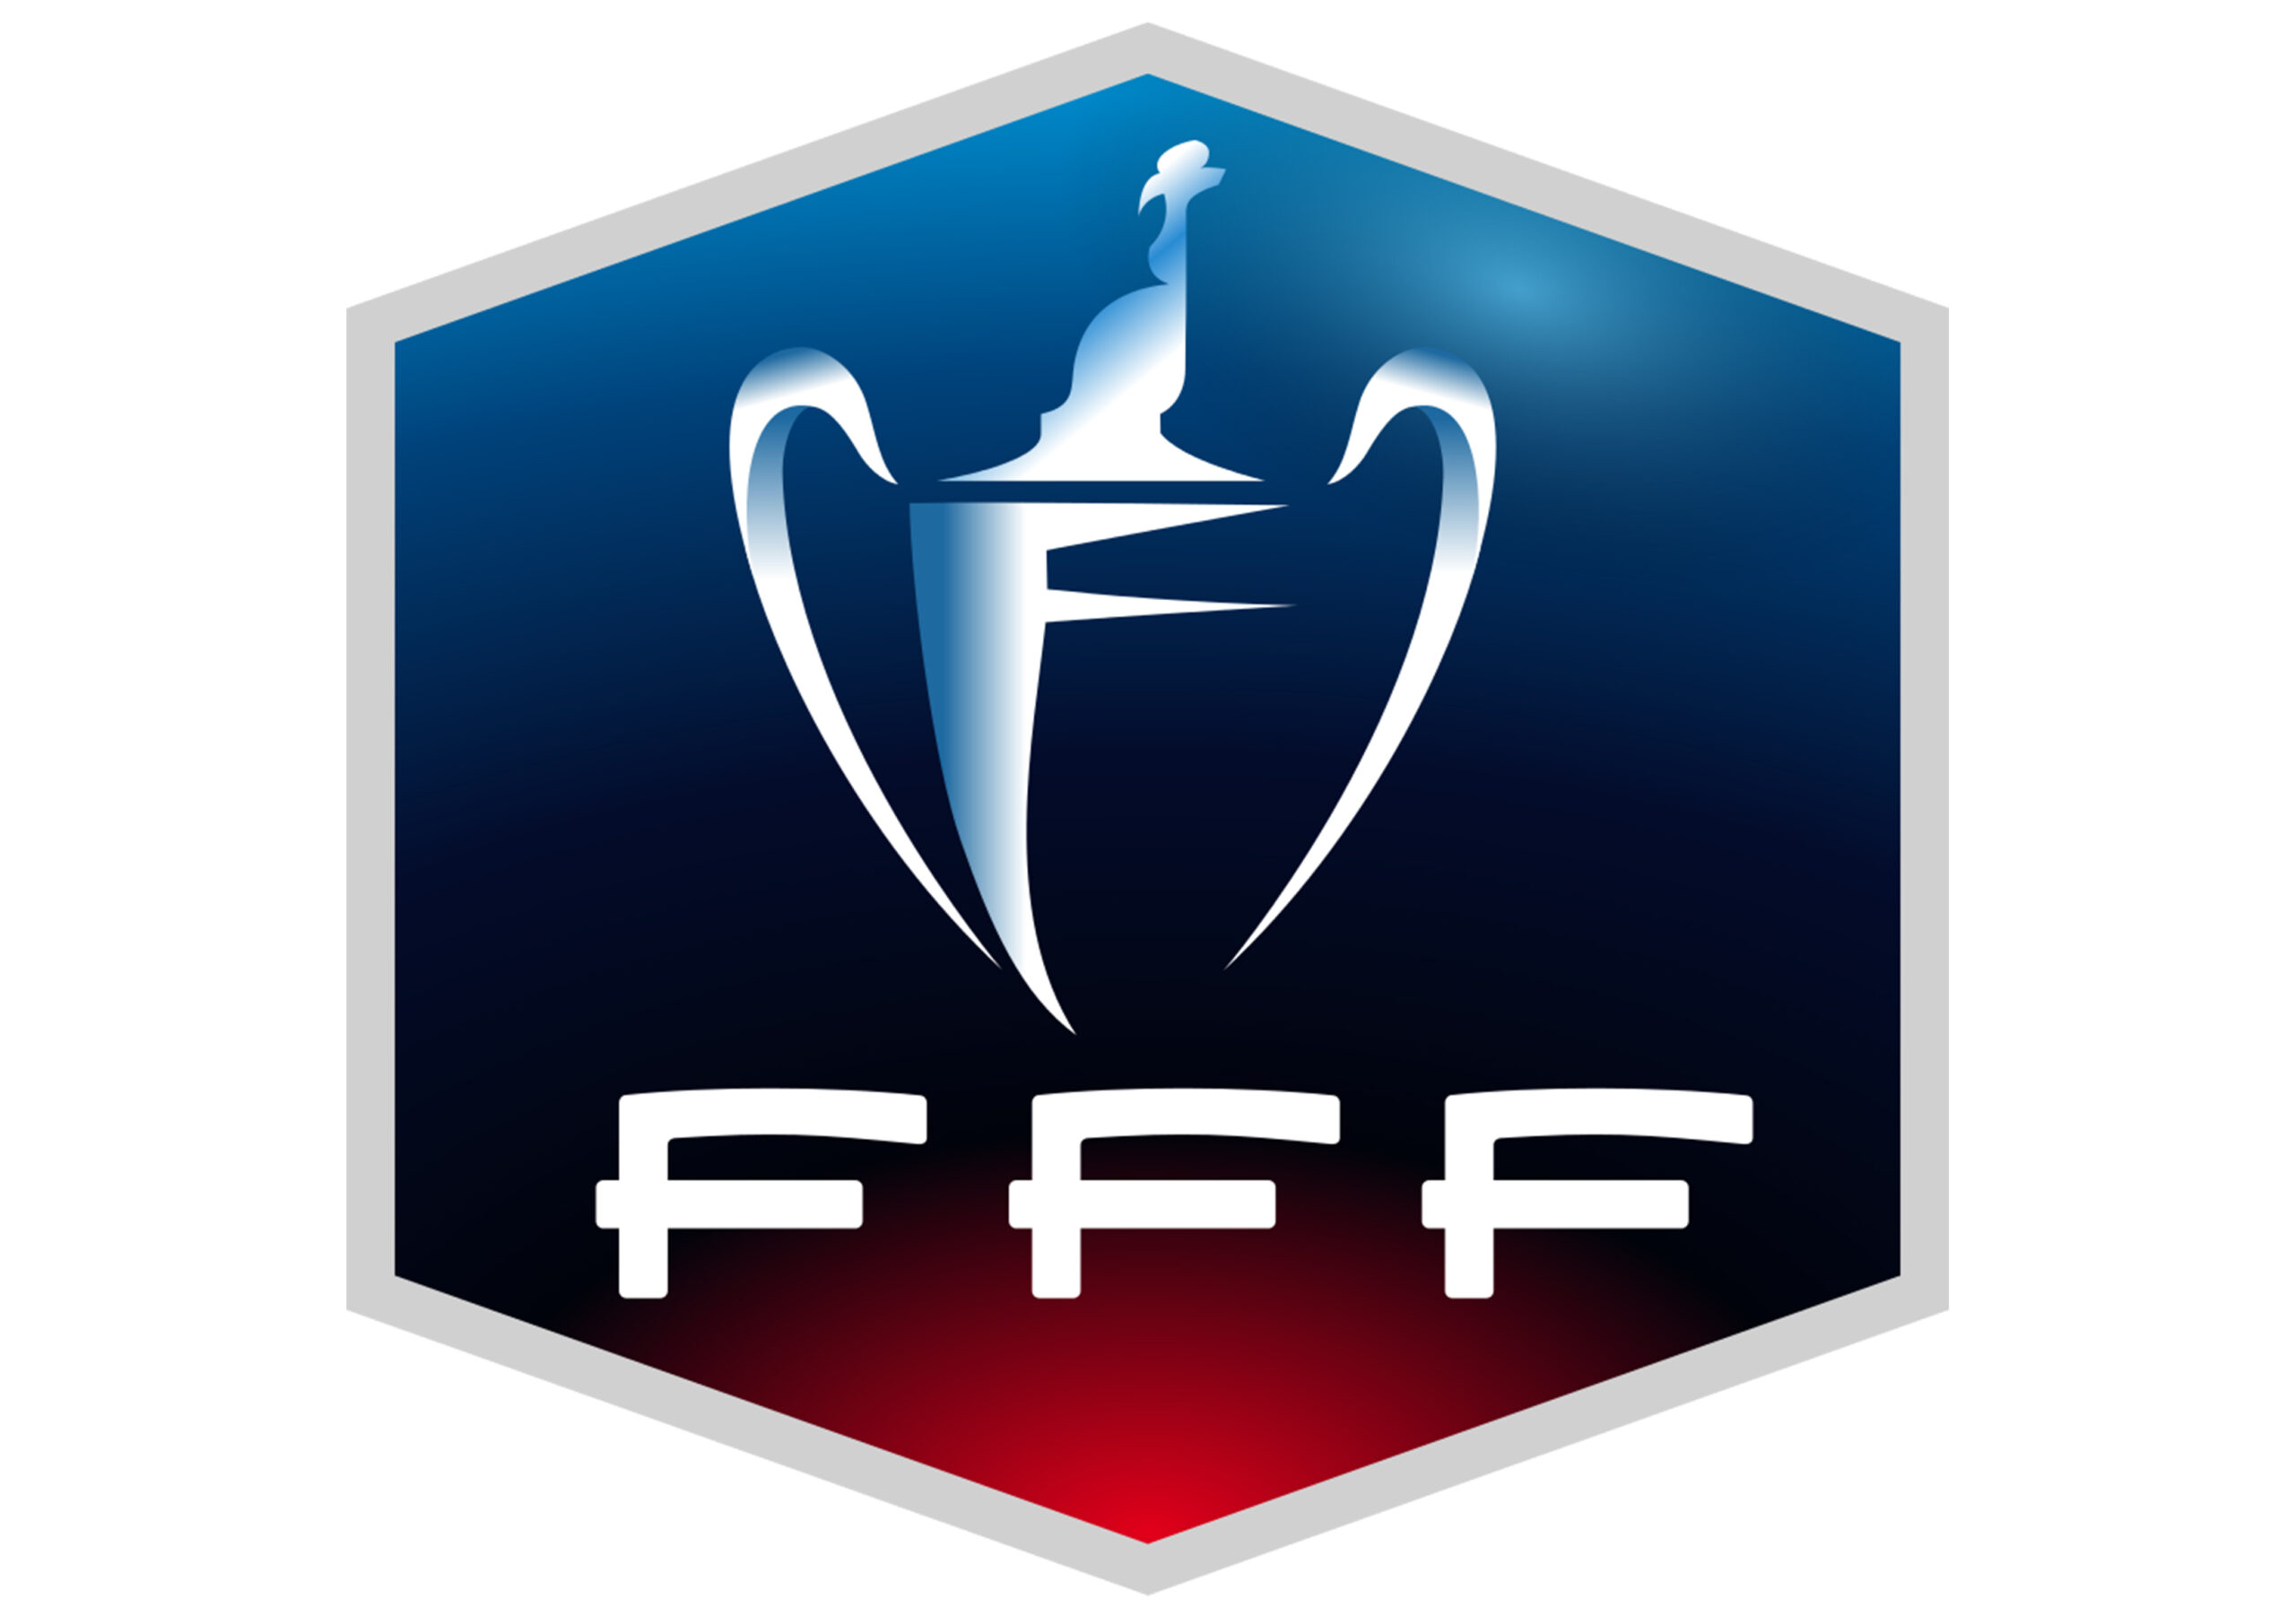 En raison du contexte sanitaire, la FFF a officialisé un nouveau format pour la Coupe de France avec deux voies jusqu'en 1/16e de finale : la première pour les amateurs, la seconde pour les clubs de Ligue 2-Ligue 1.